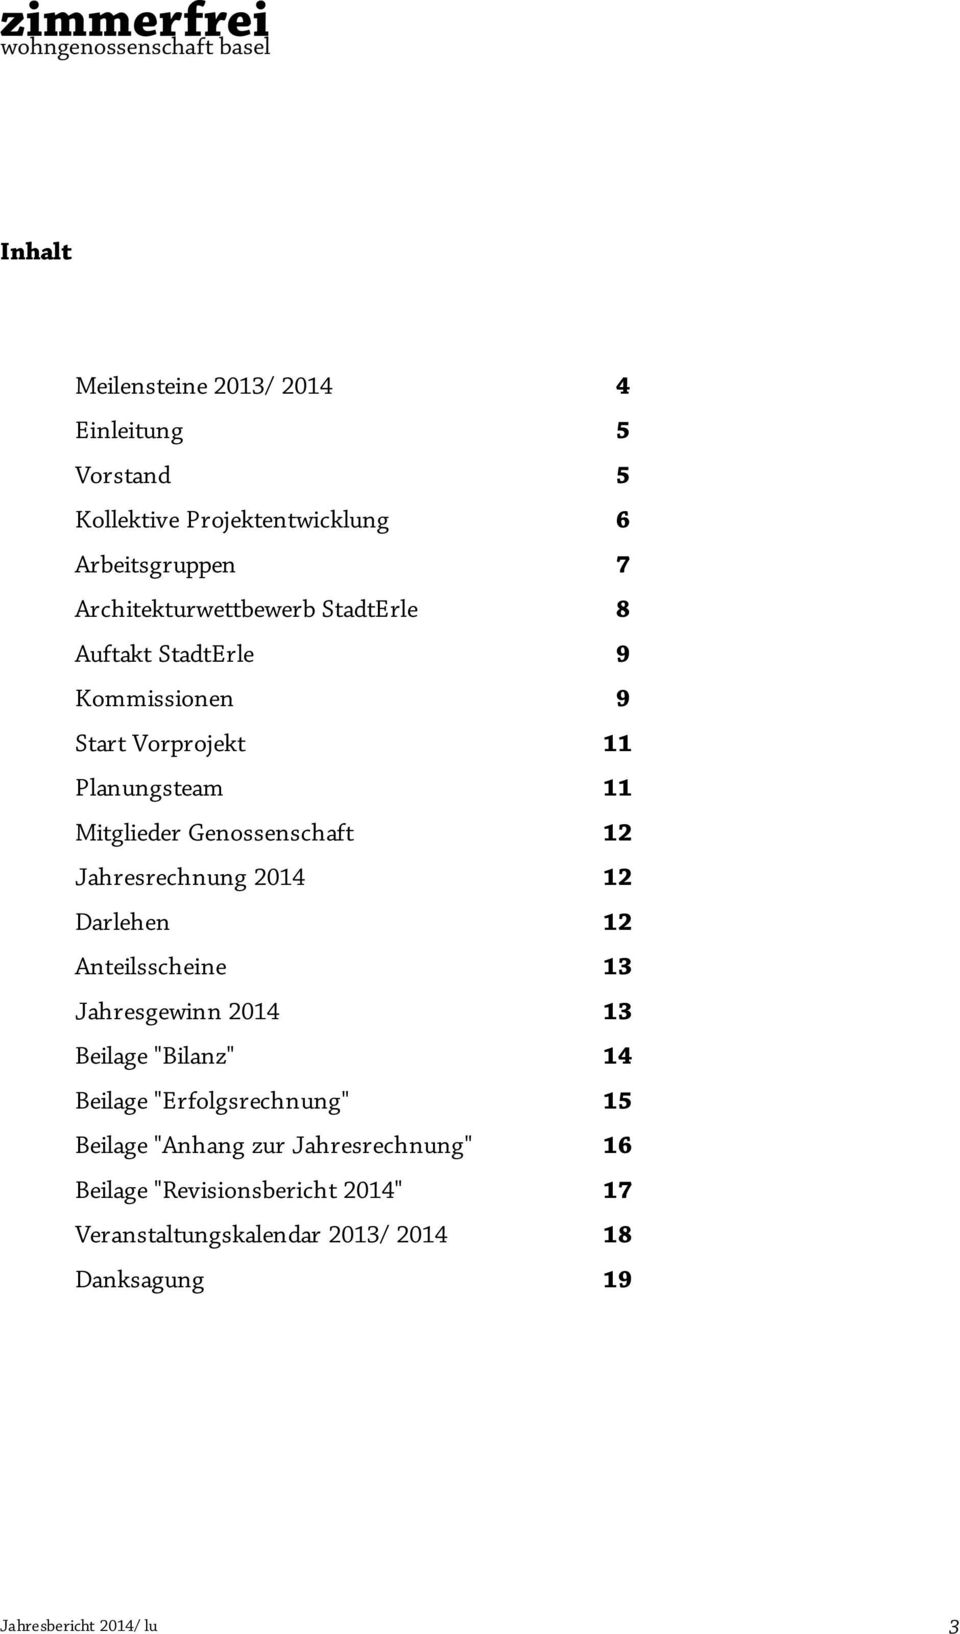 Genossenschaft 12 Jahresrechnung 2014 12 Darlehen 12 Anteilsscheine 13 Jahresgewinn 2014 13 Beilage "Bilanz" 14 Beilage